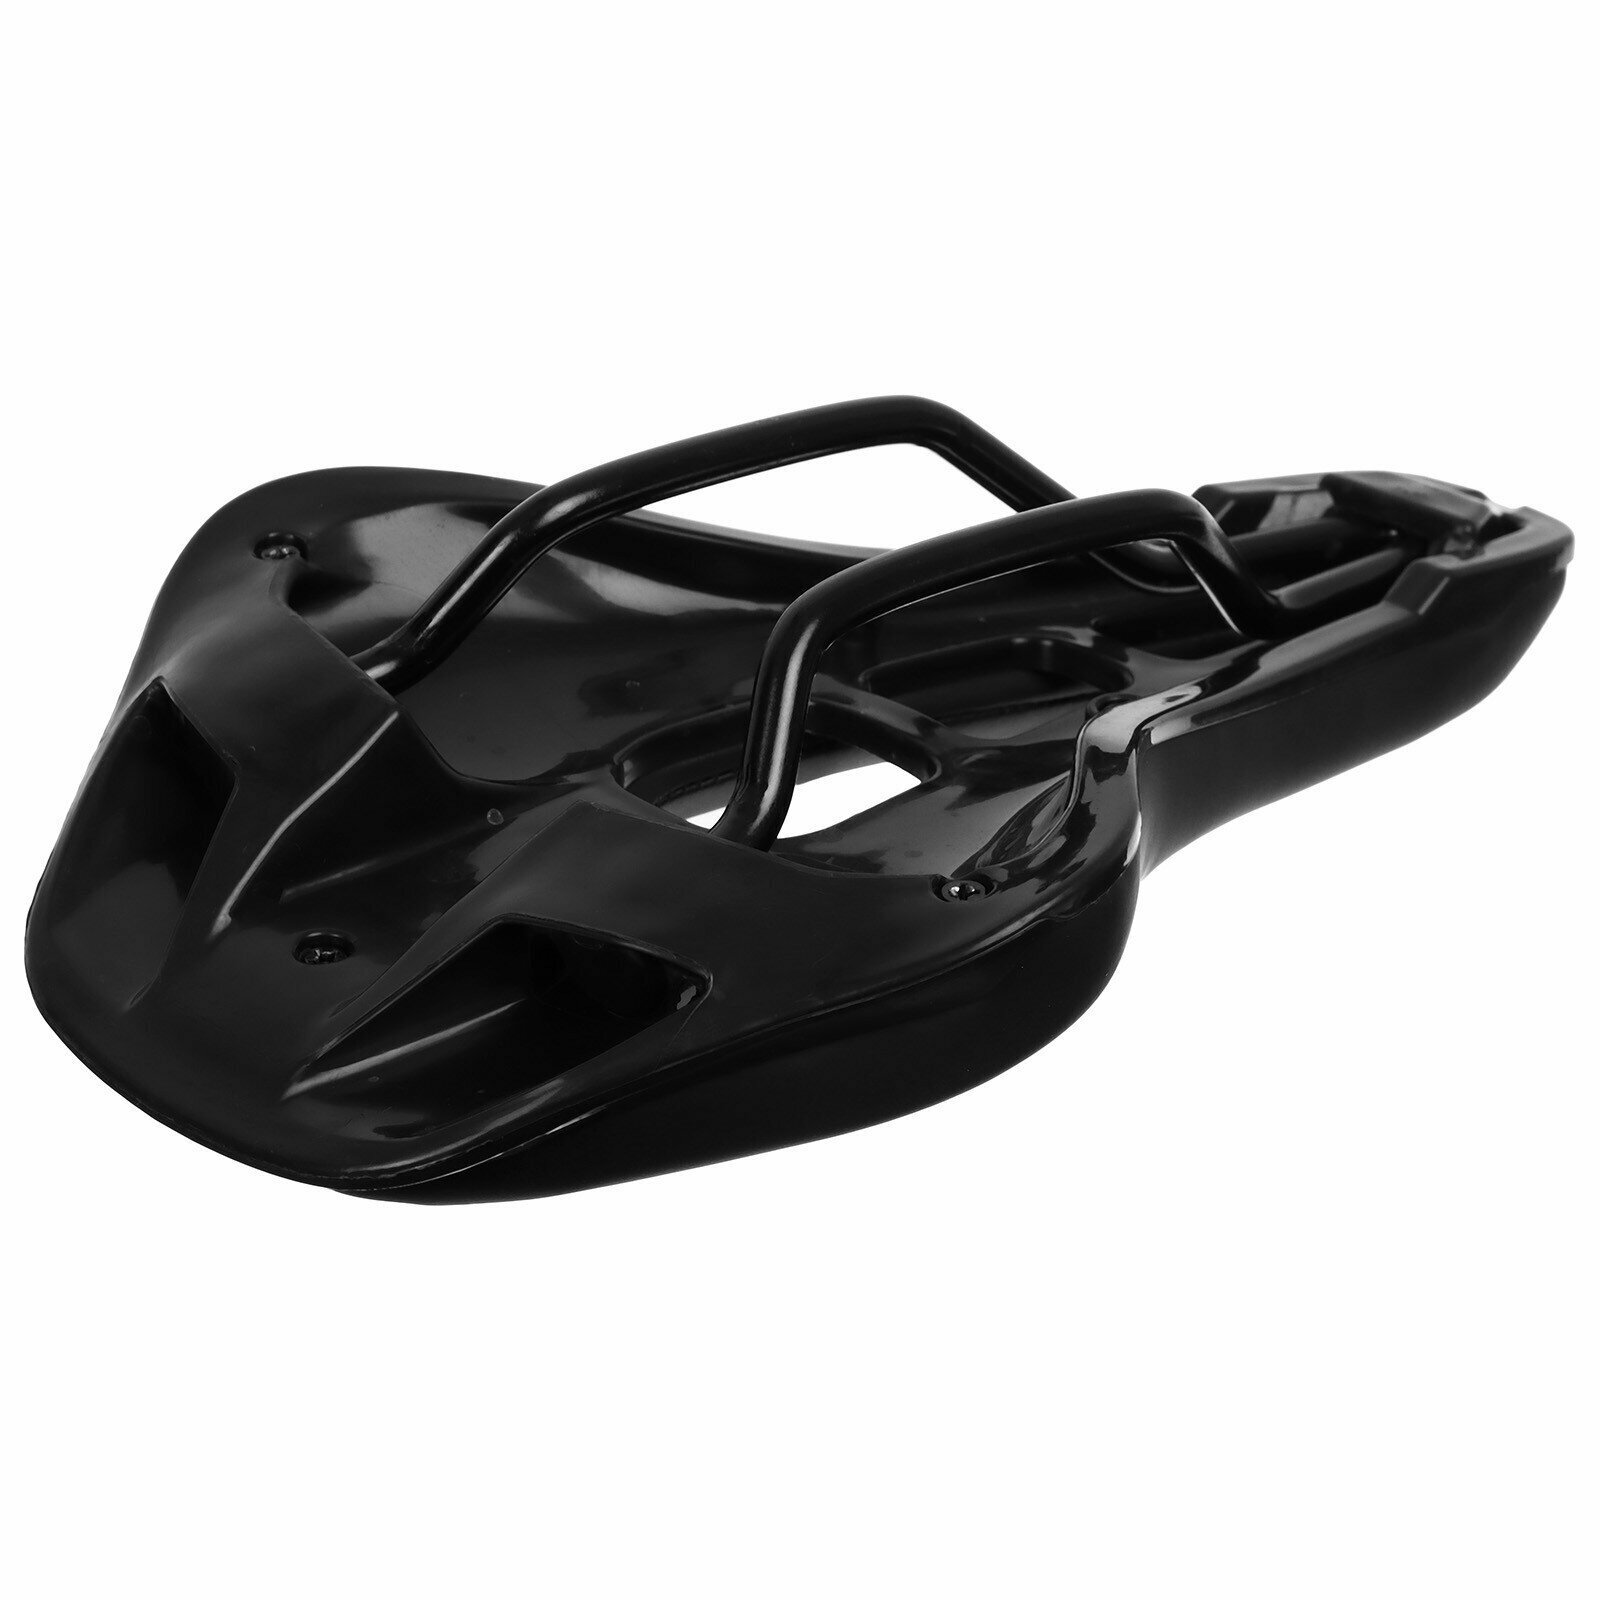 Седло Dream Bike, спорт-комфорт, цвет чёрный